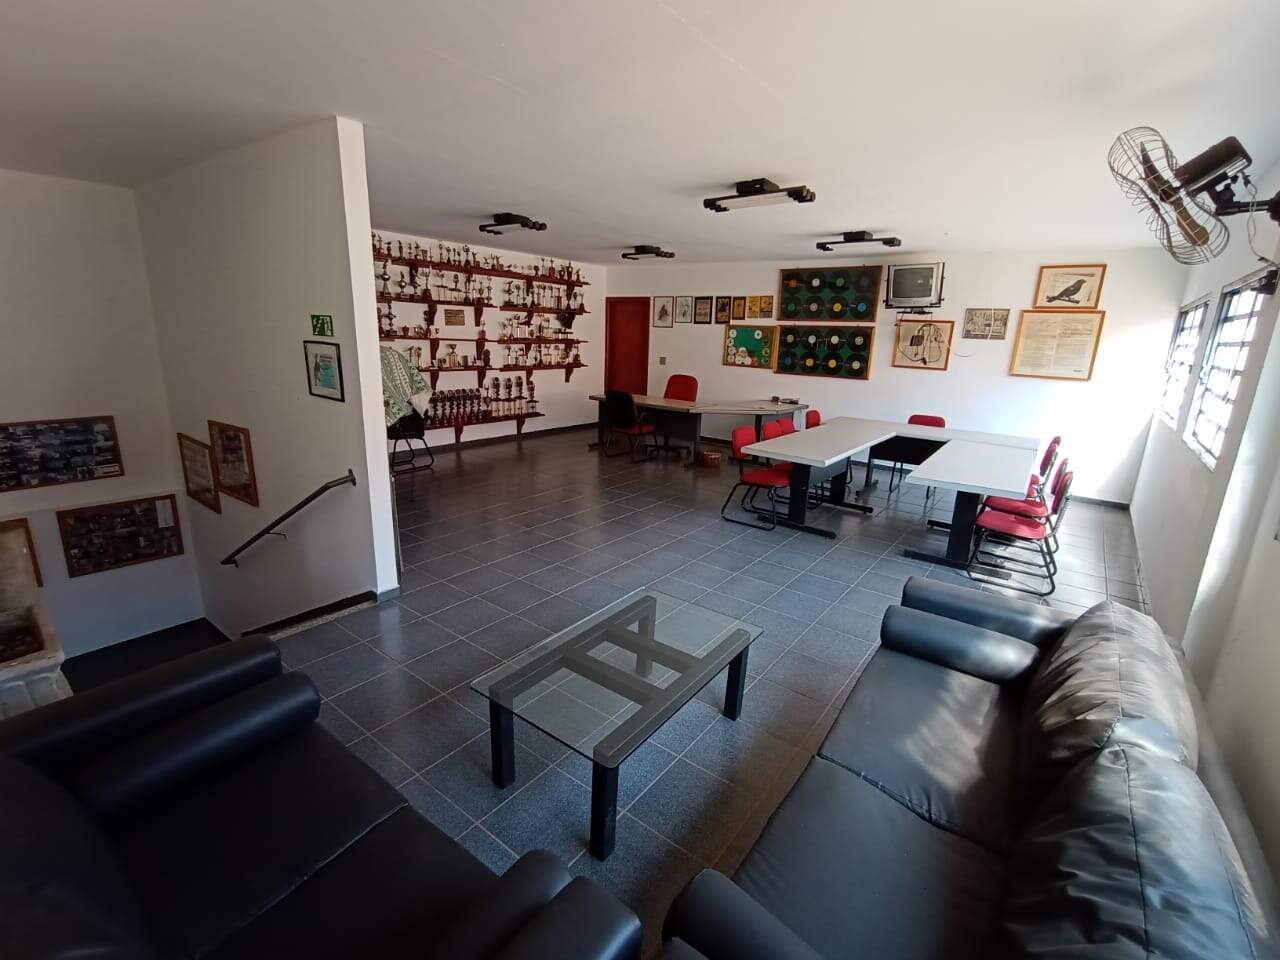 Casa para alugar, 5 quartos, no bairro Castelinho em Piracicaba - SP